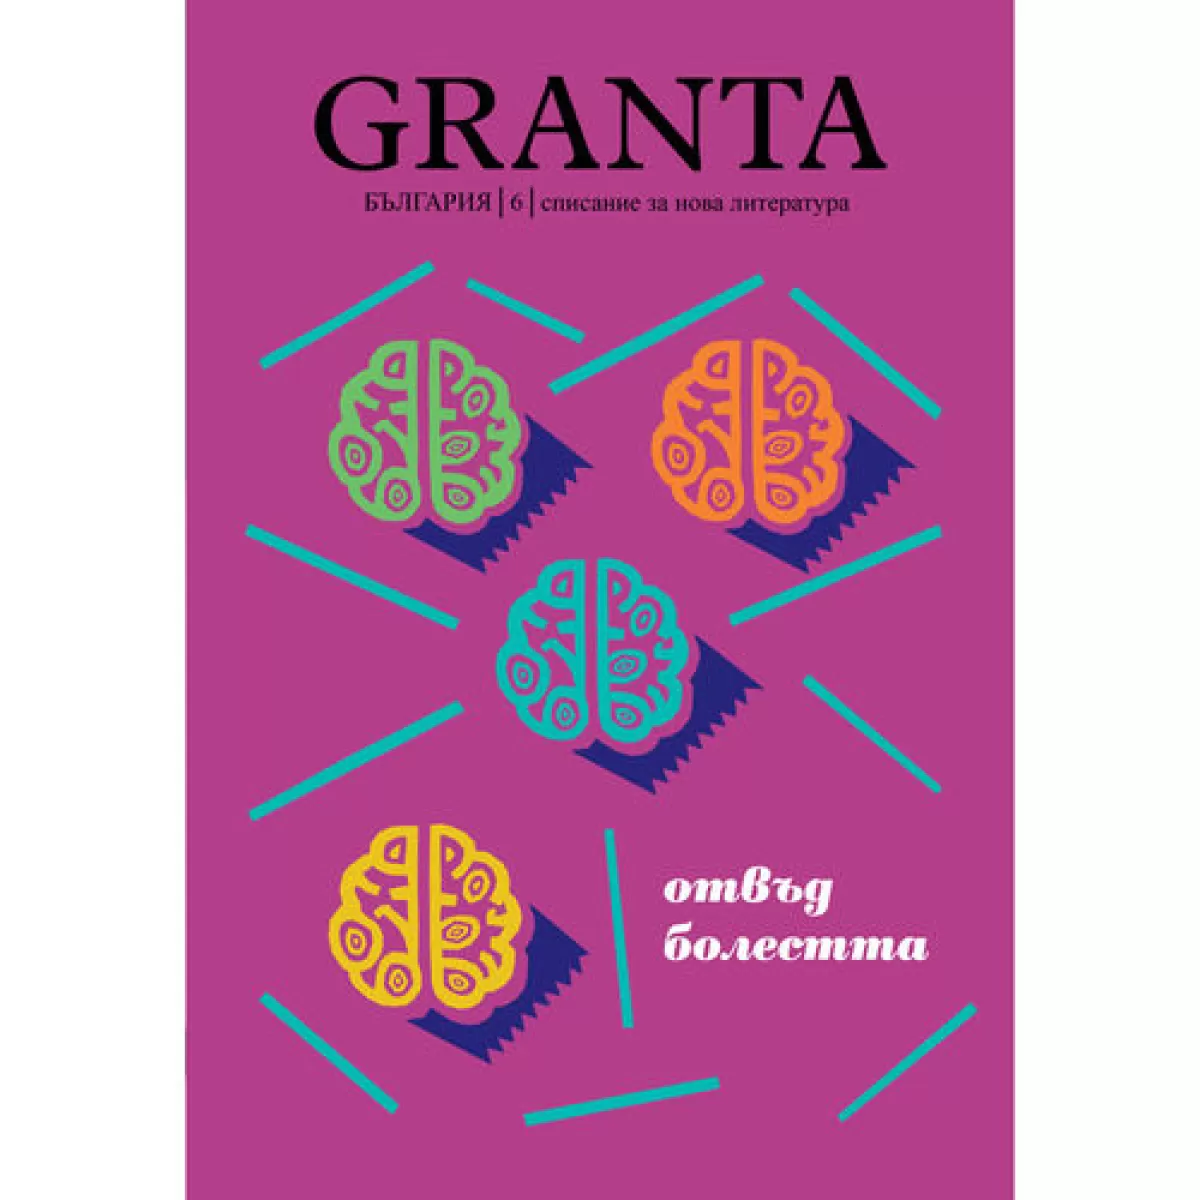 Granta България 6: Отвъд болестта - списание за нова литература